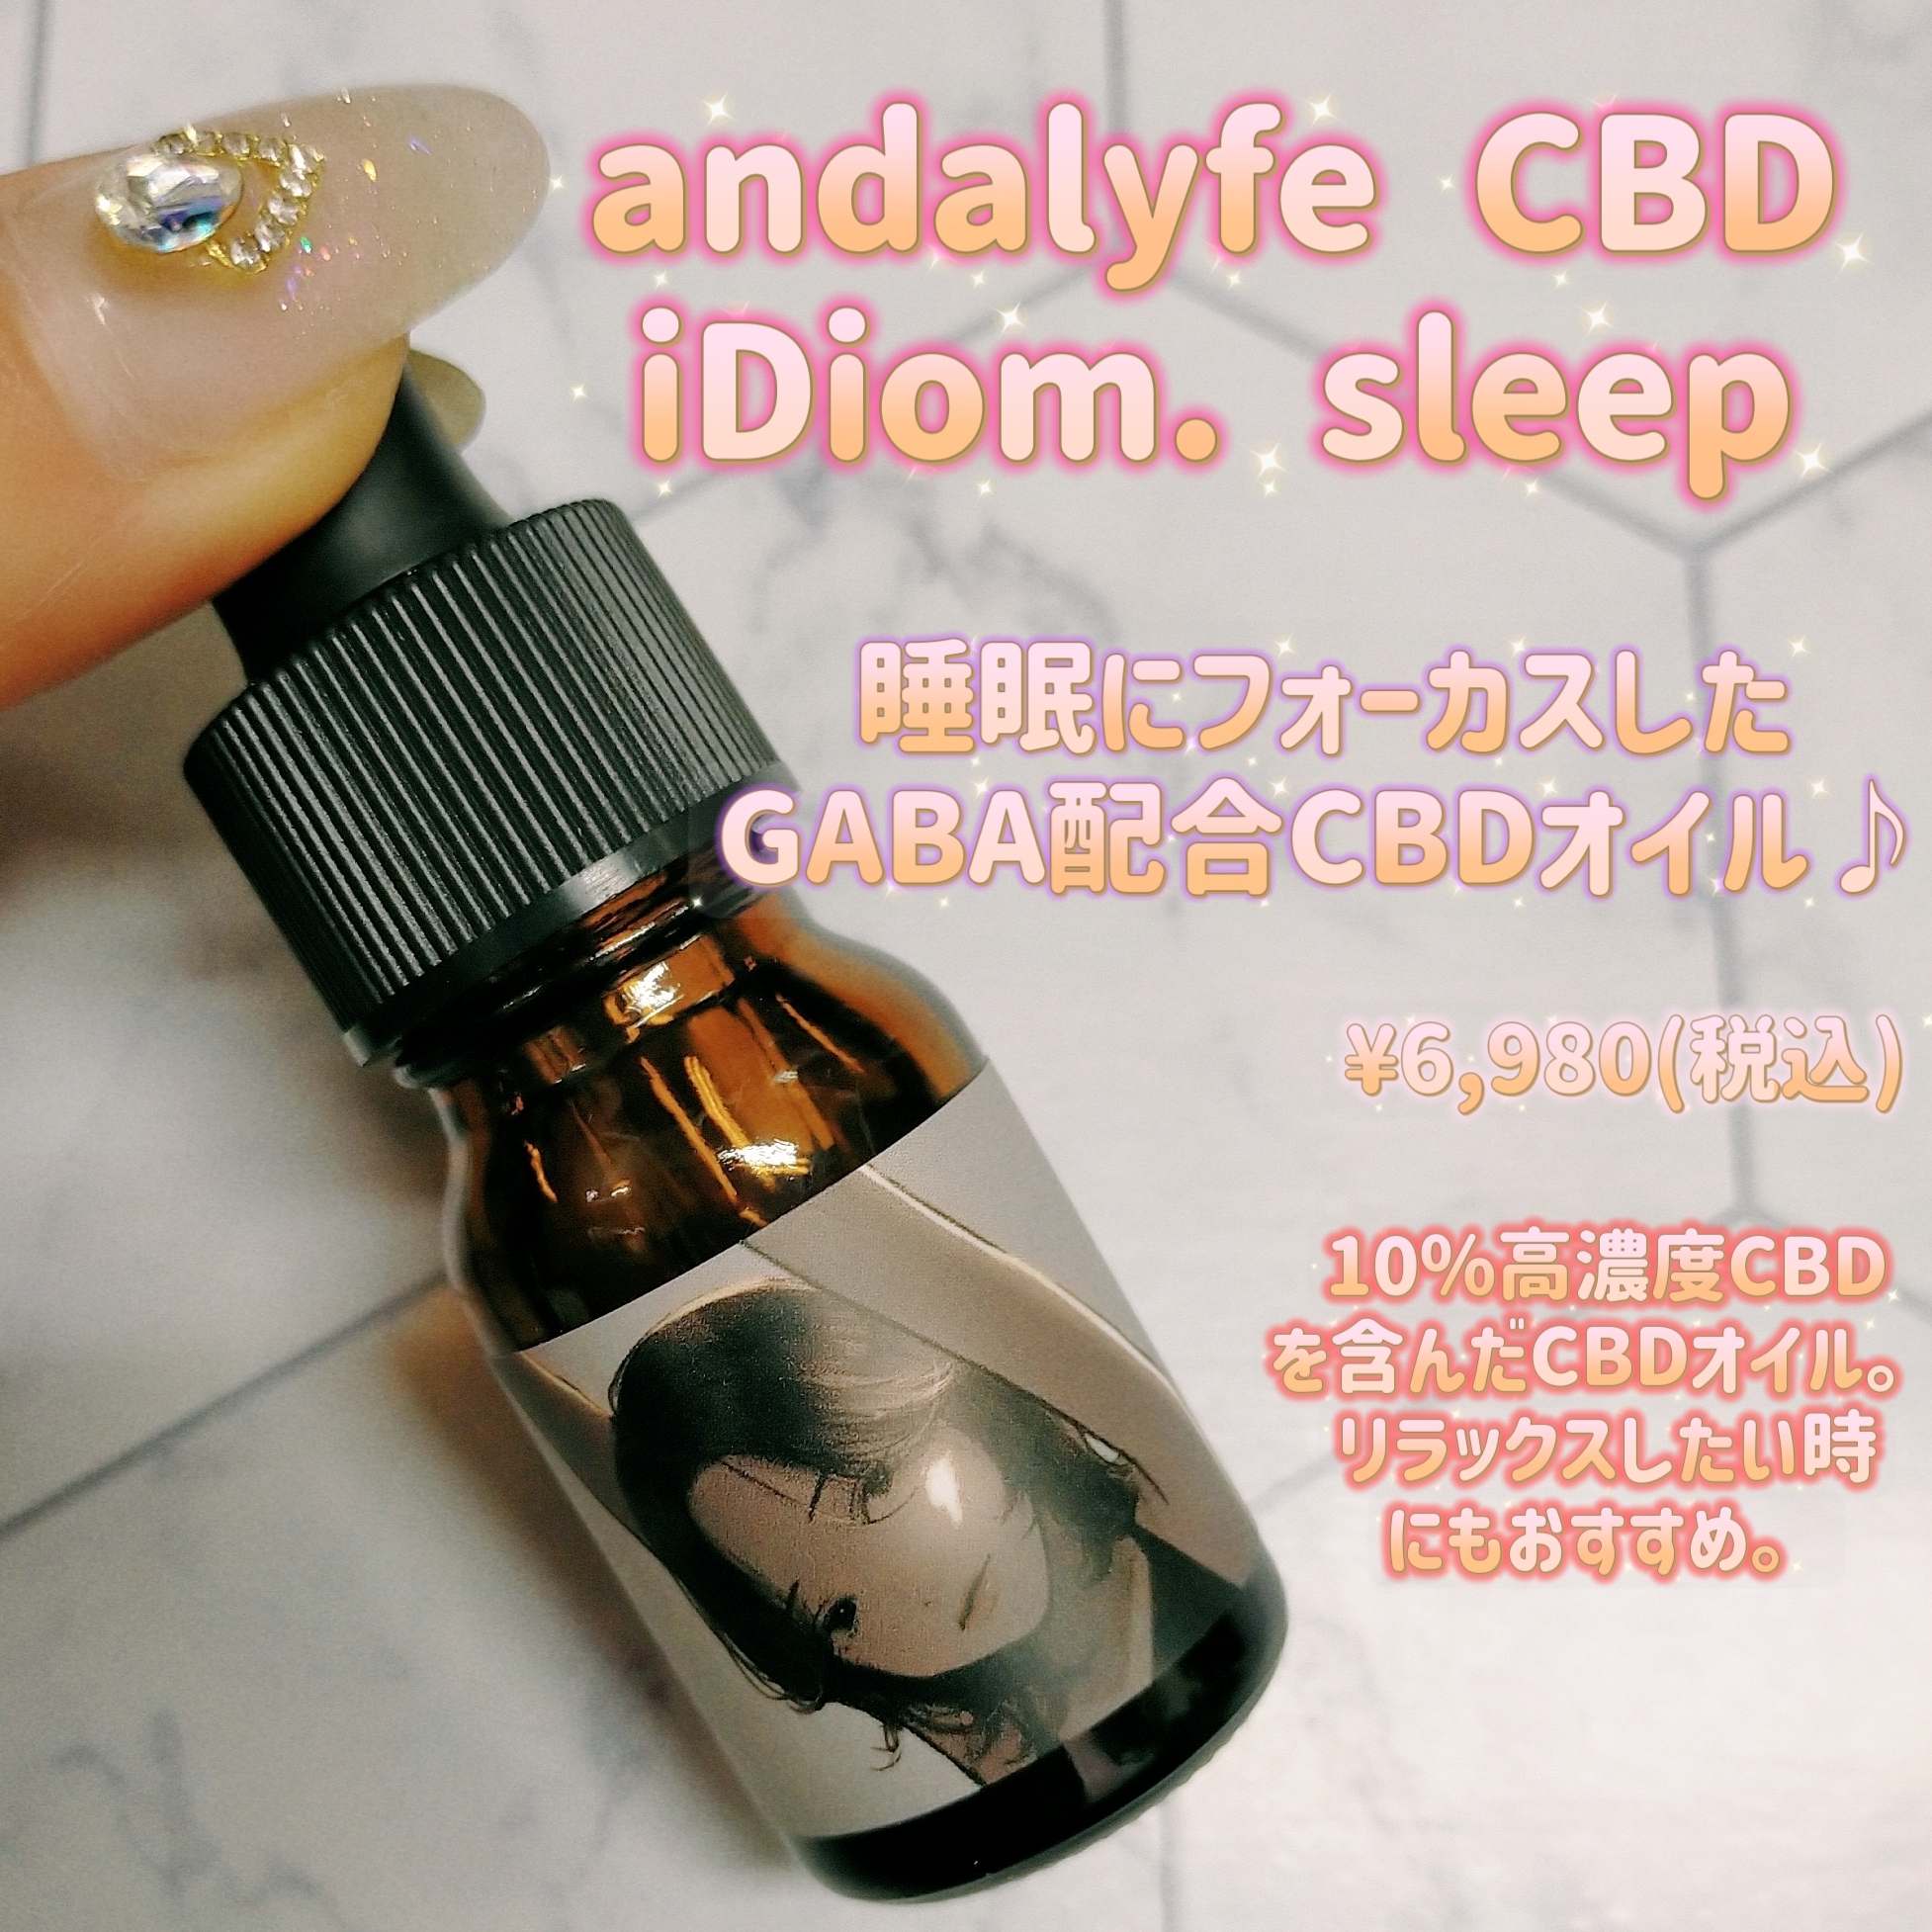 andalyfe CBD -iDiom.シリーズ-『sleep』の良い点・メリットに関するみこさんの口コミ画像1